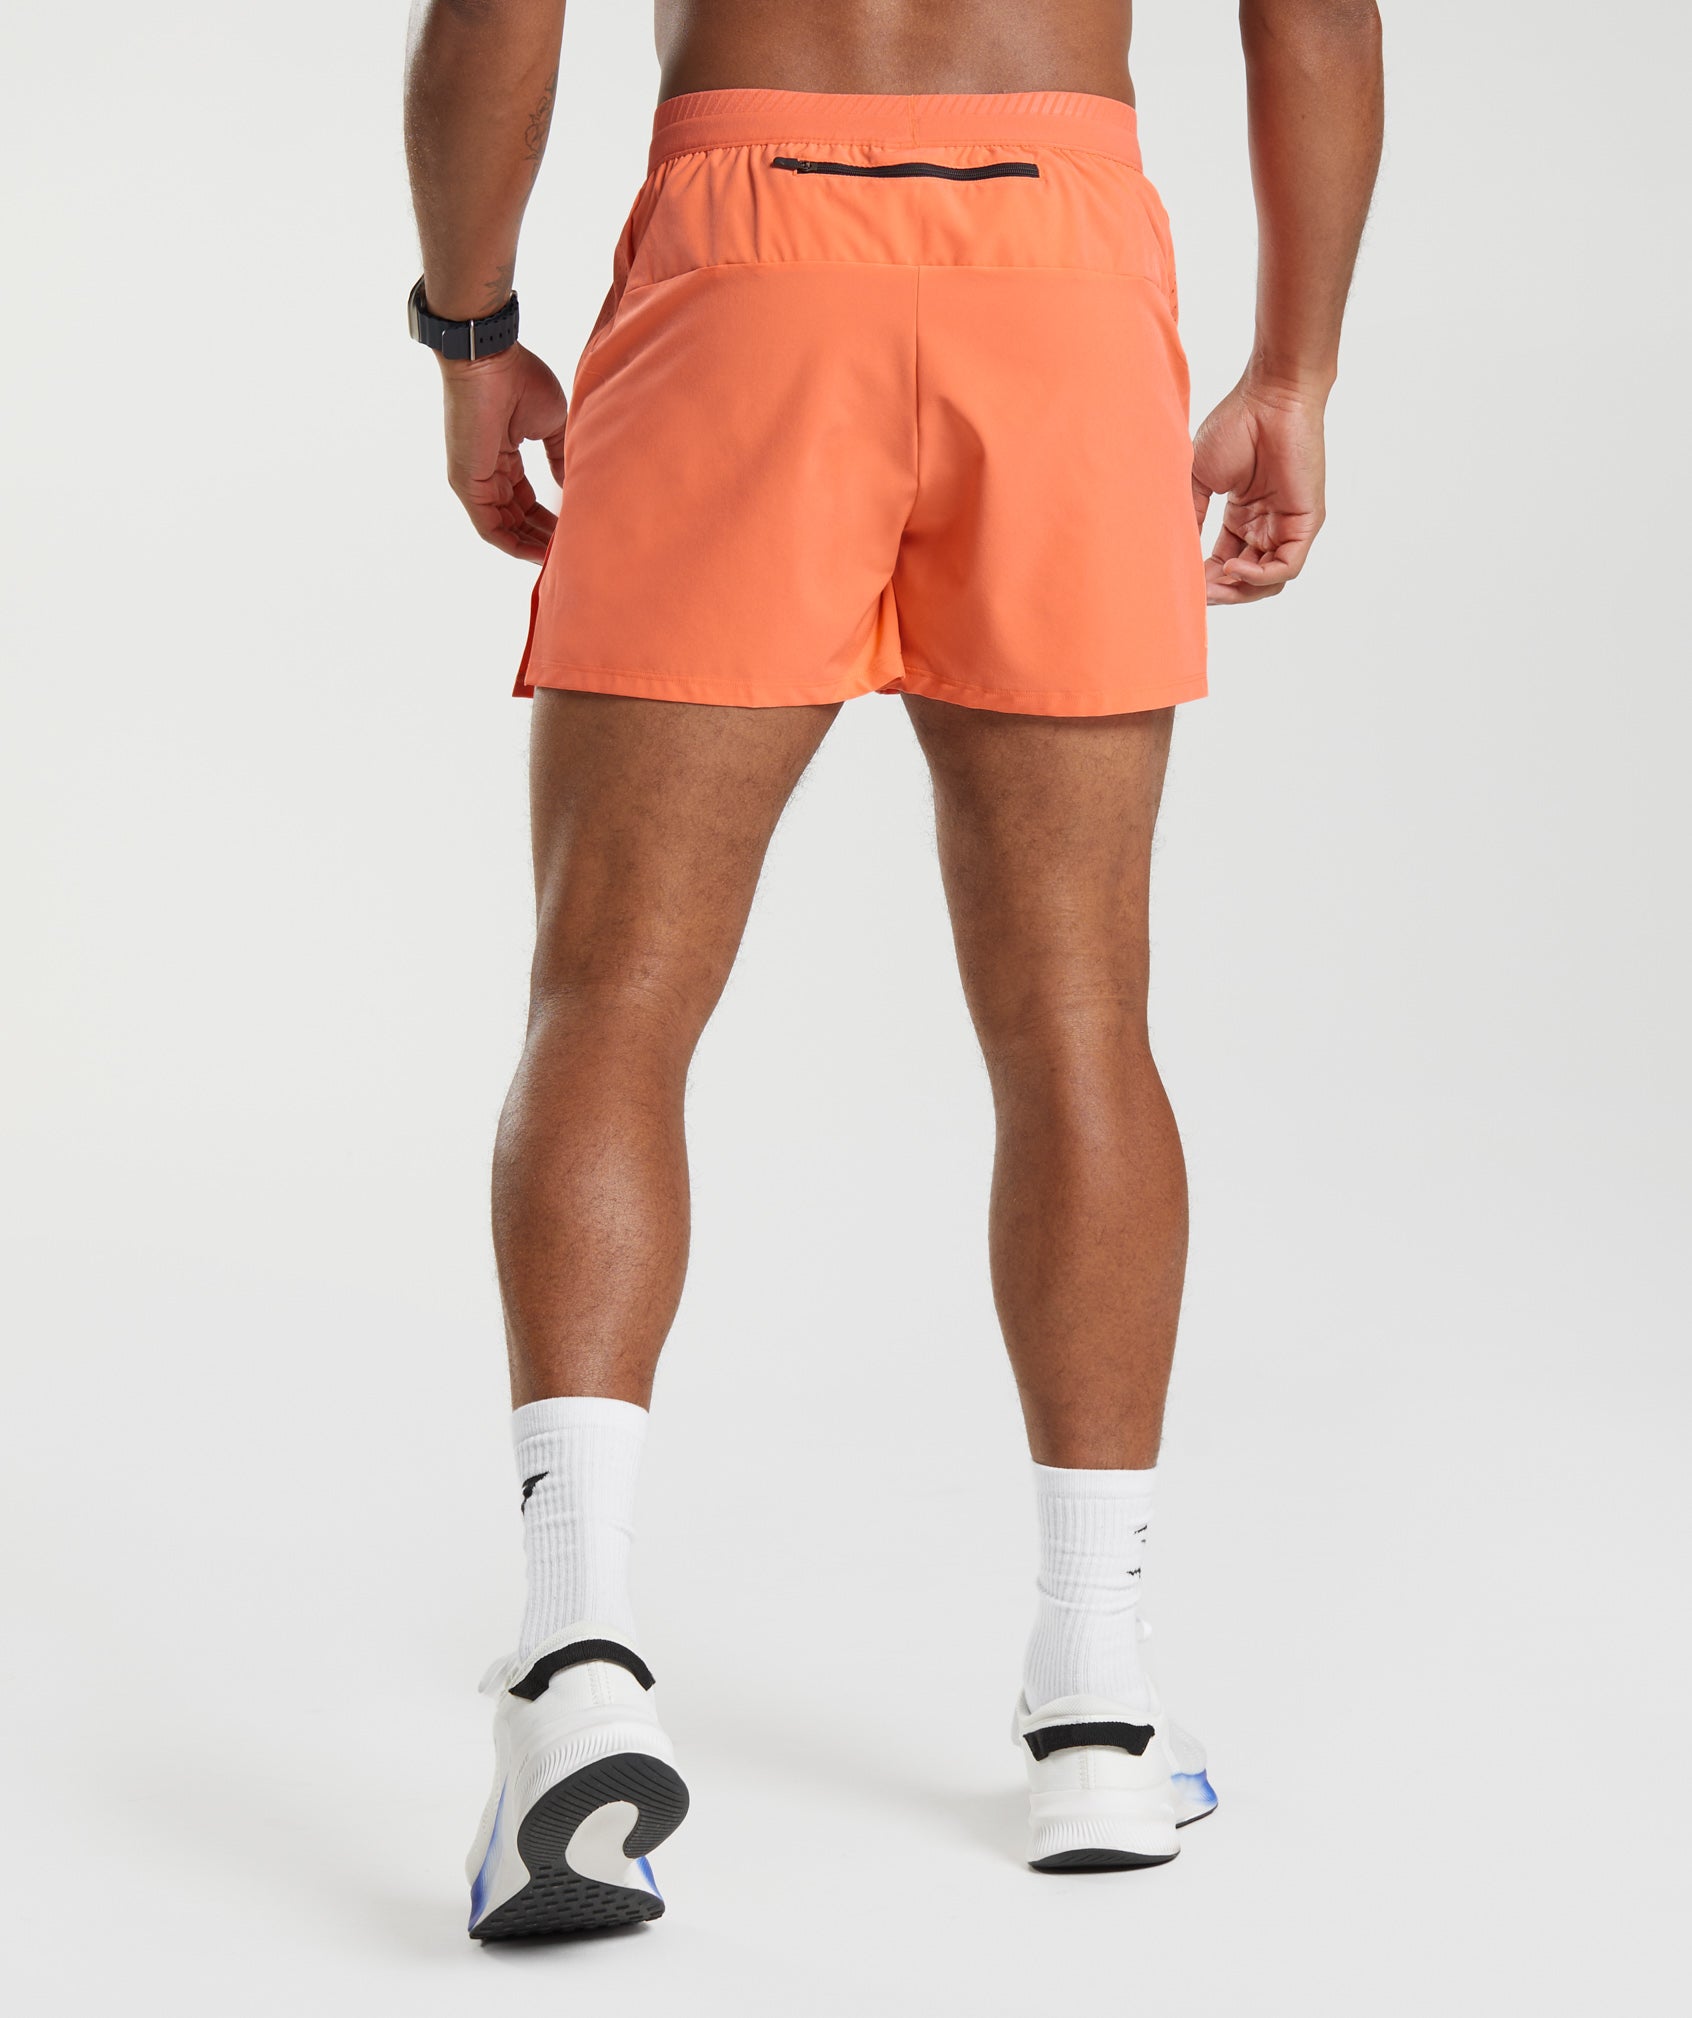 Apex Run 4" Shorts in Solstice Orange - view 2